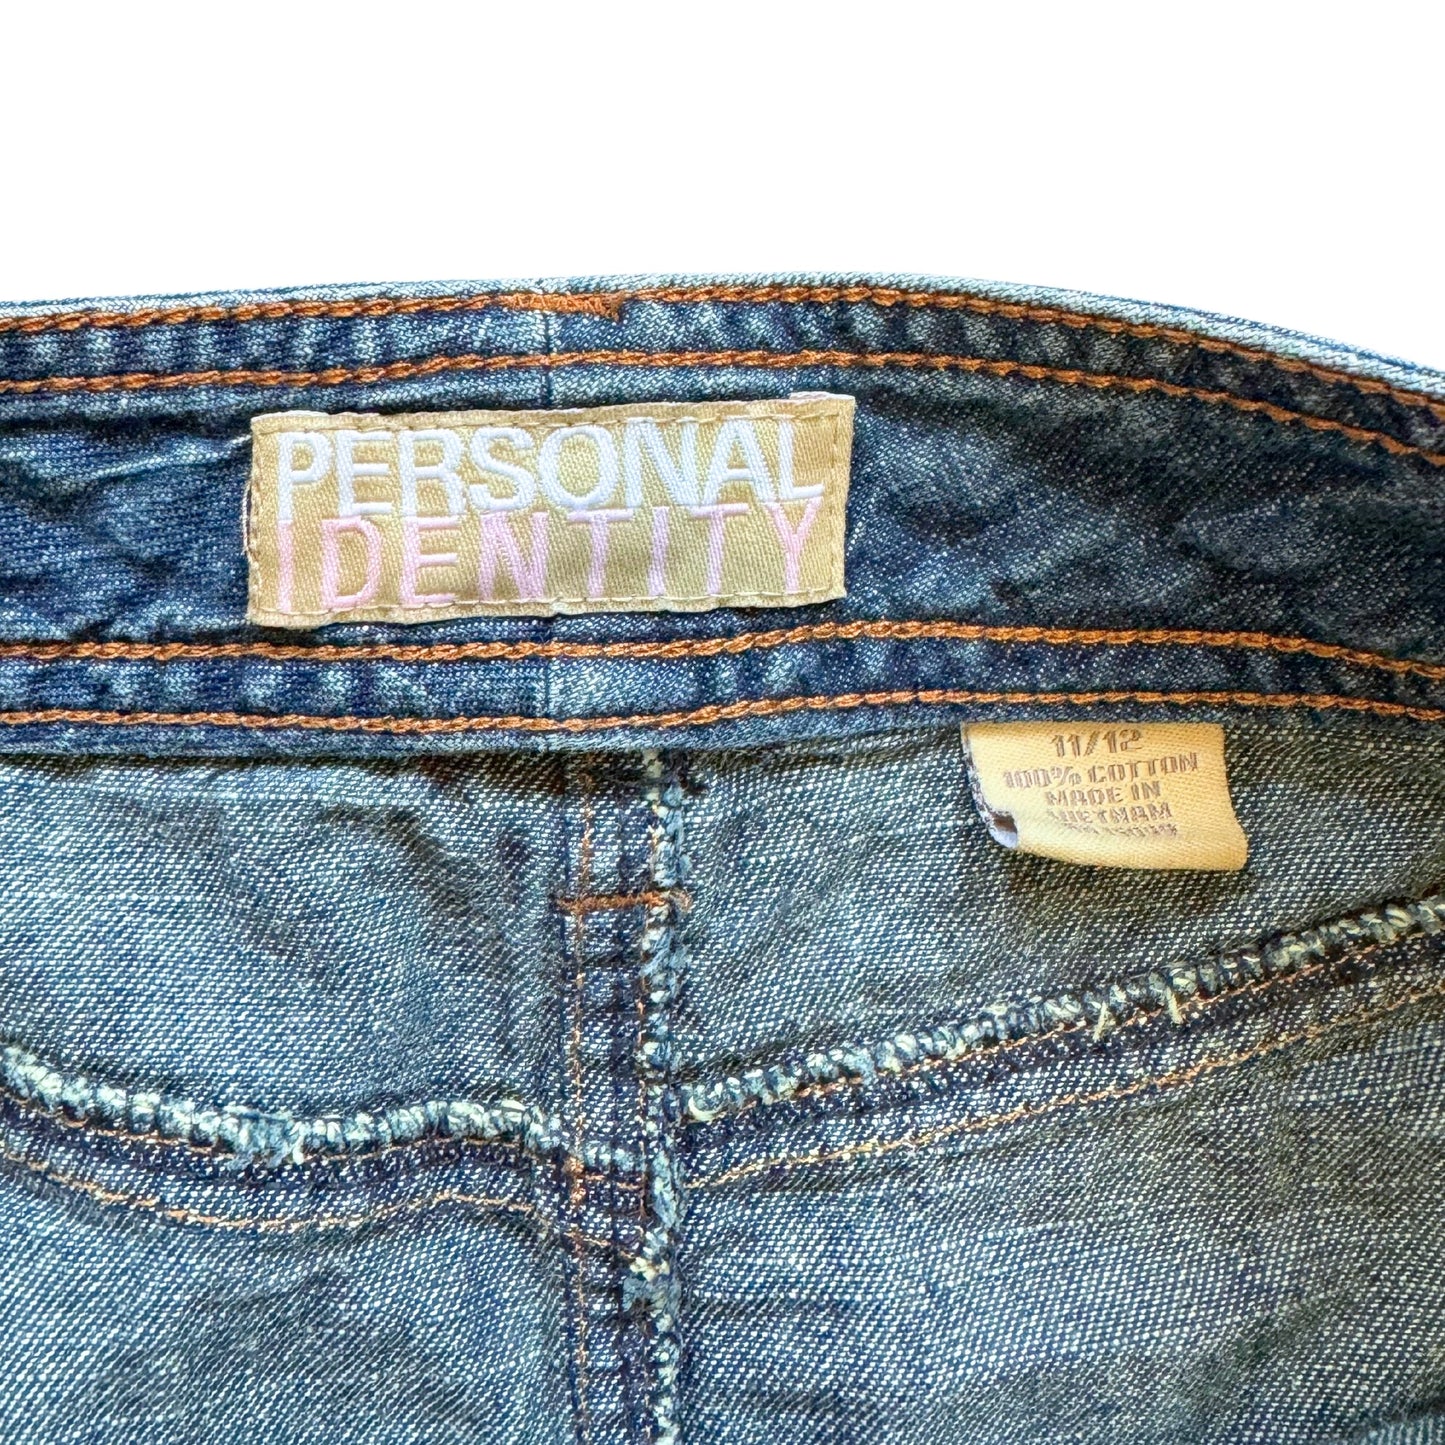 Vintage 2000s Y2k Personal Identity Denim Midi Skirt